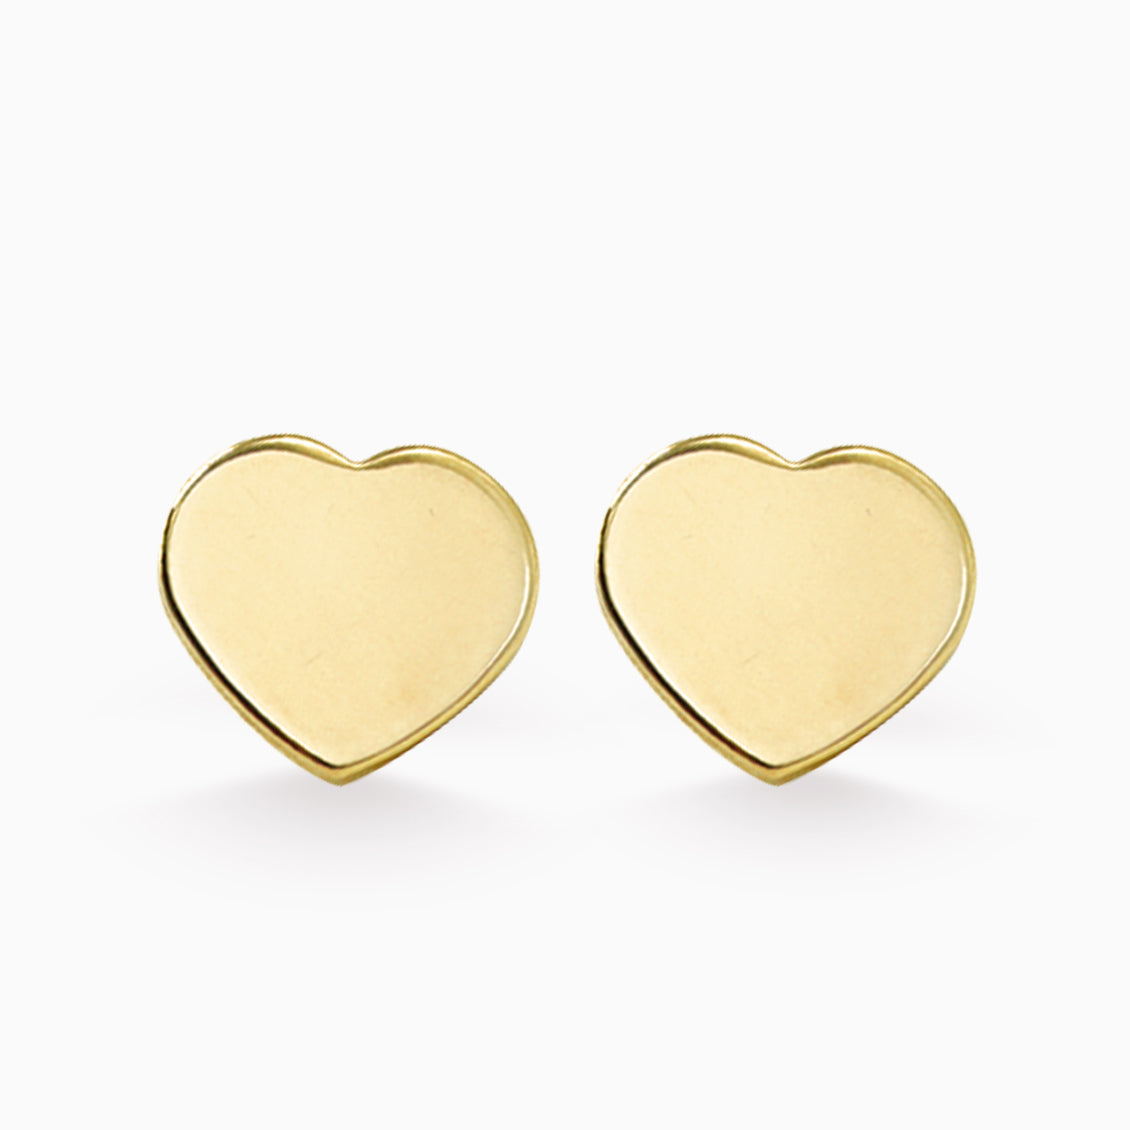 Aretes en oro amarillo de 18K forma de corazon - Aldo & Co.